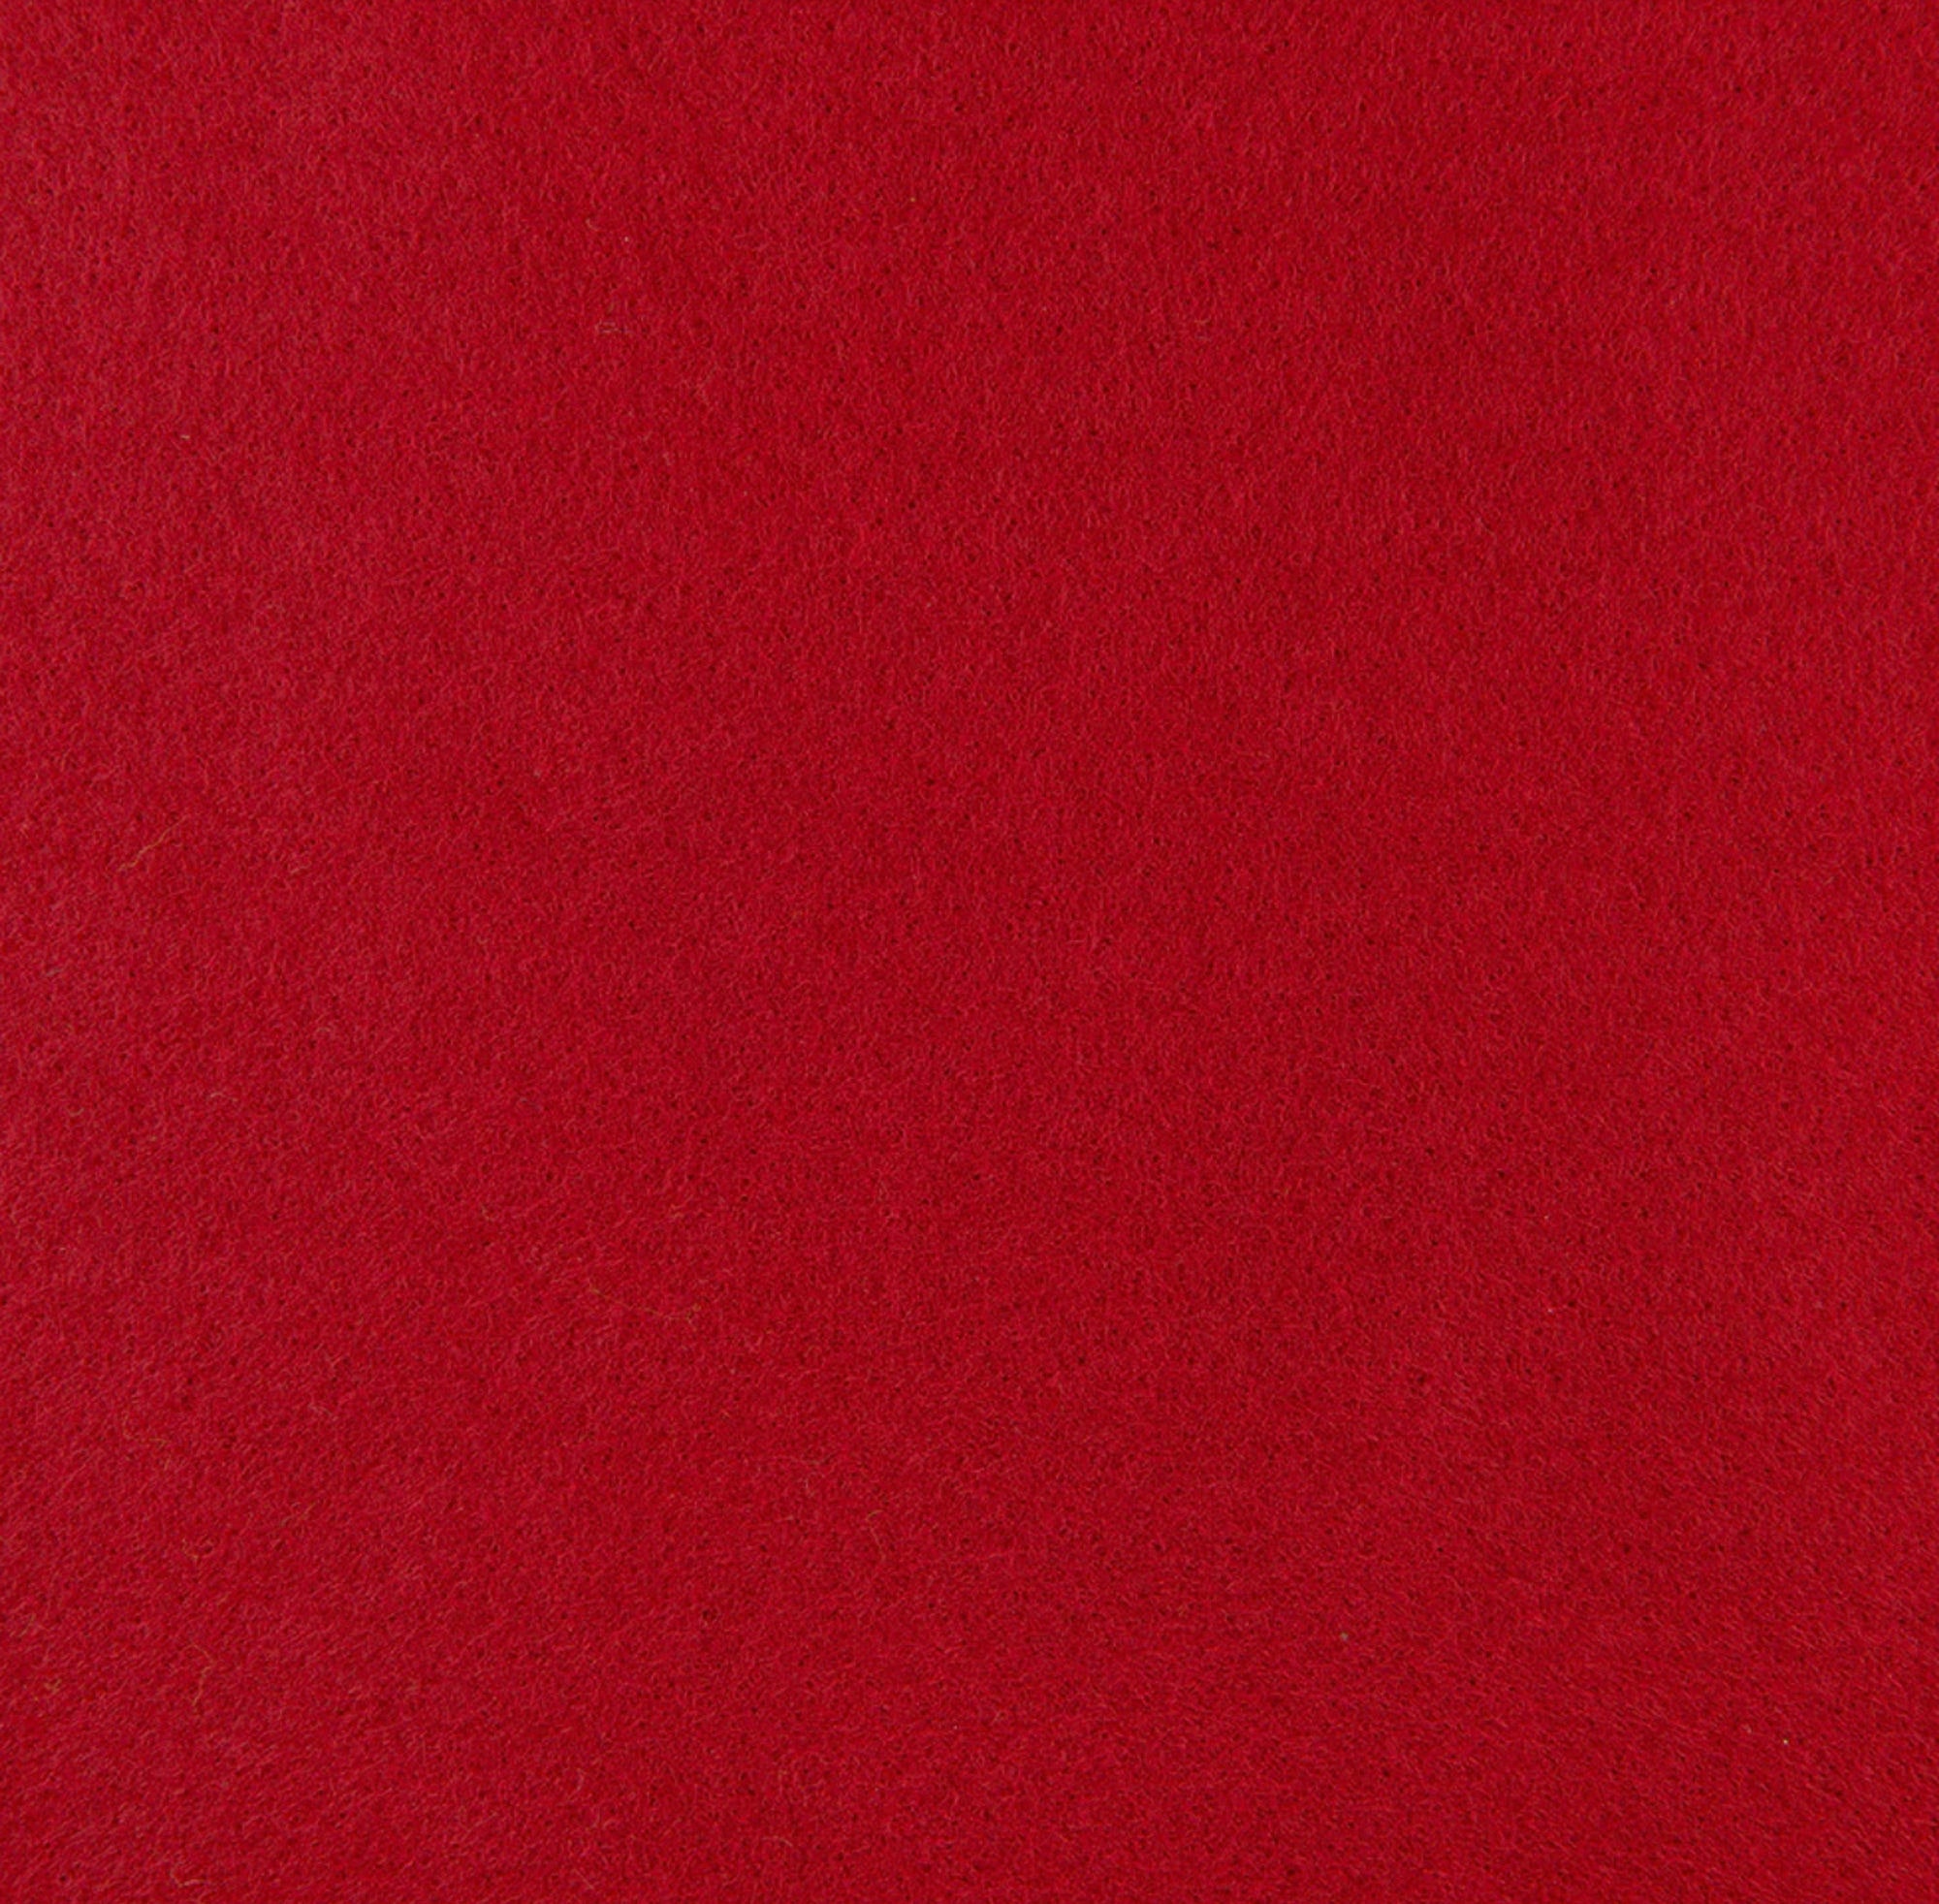 RED Wool Felt, Merino Wool Felt, Wool Felt, Wool Felt Fabric, Red Felt  Fabric, Red Wool Felt, Christmas Felt, by the Half Yard 